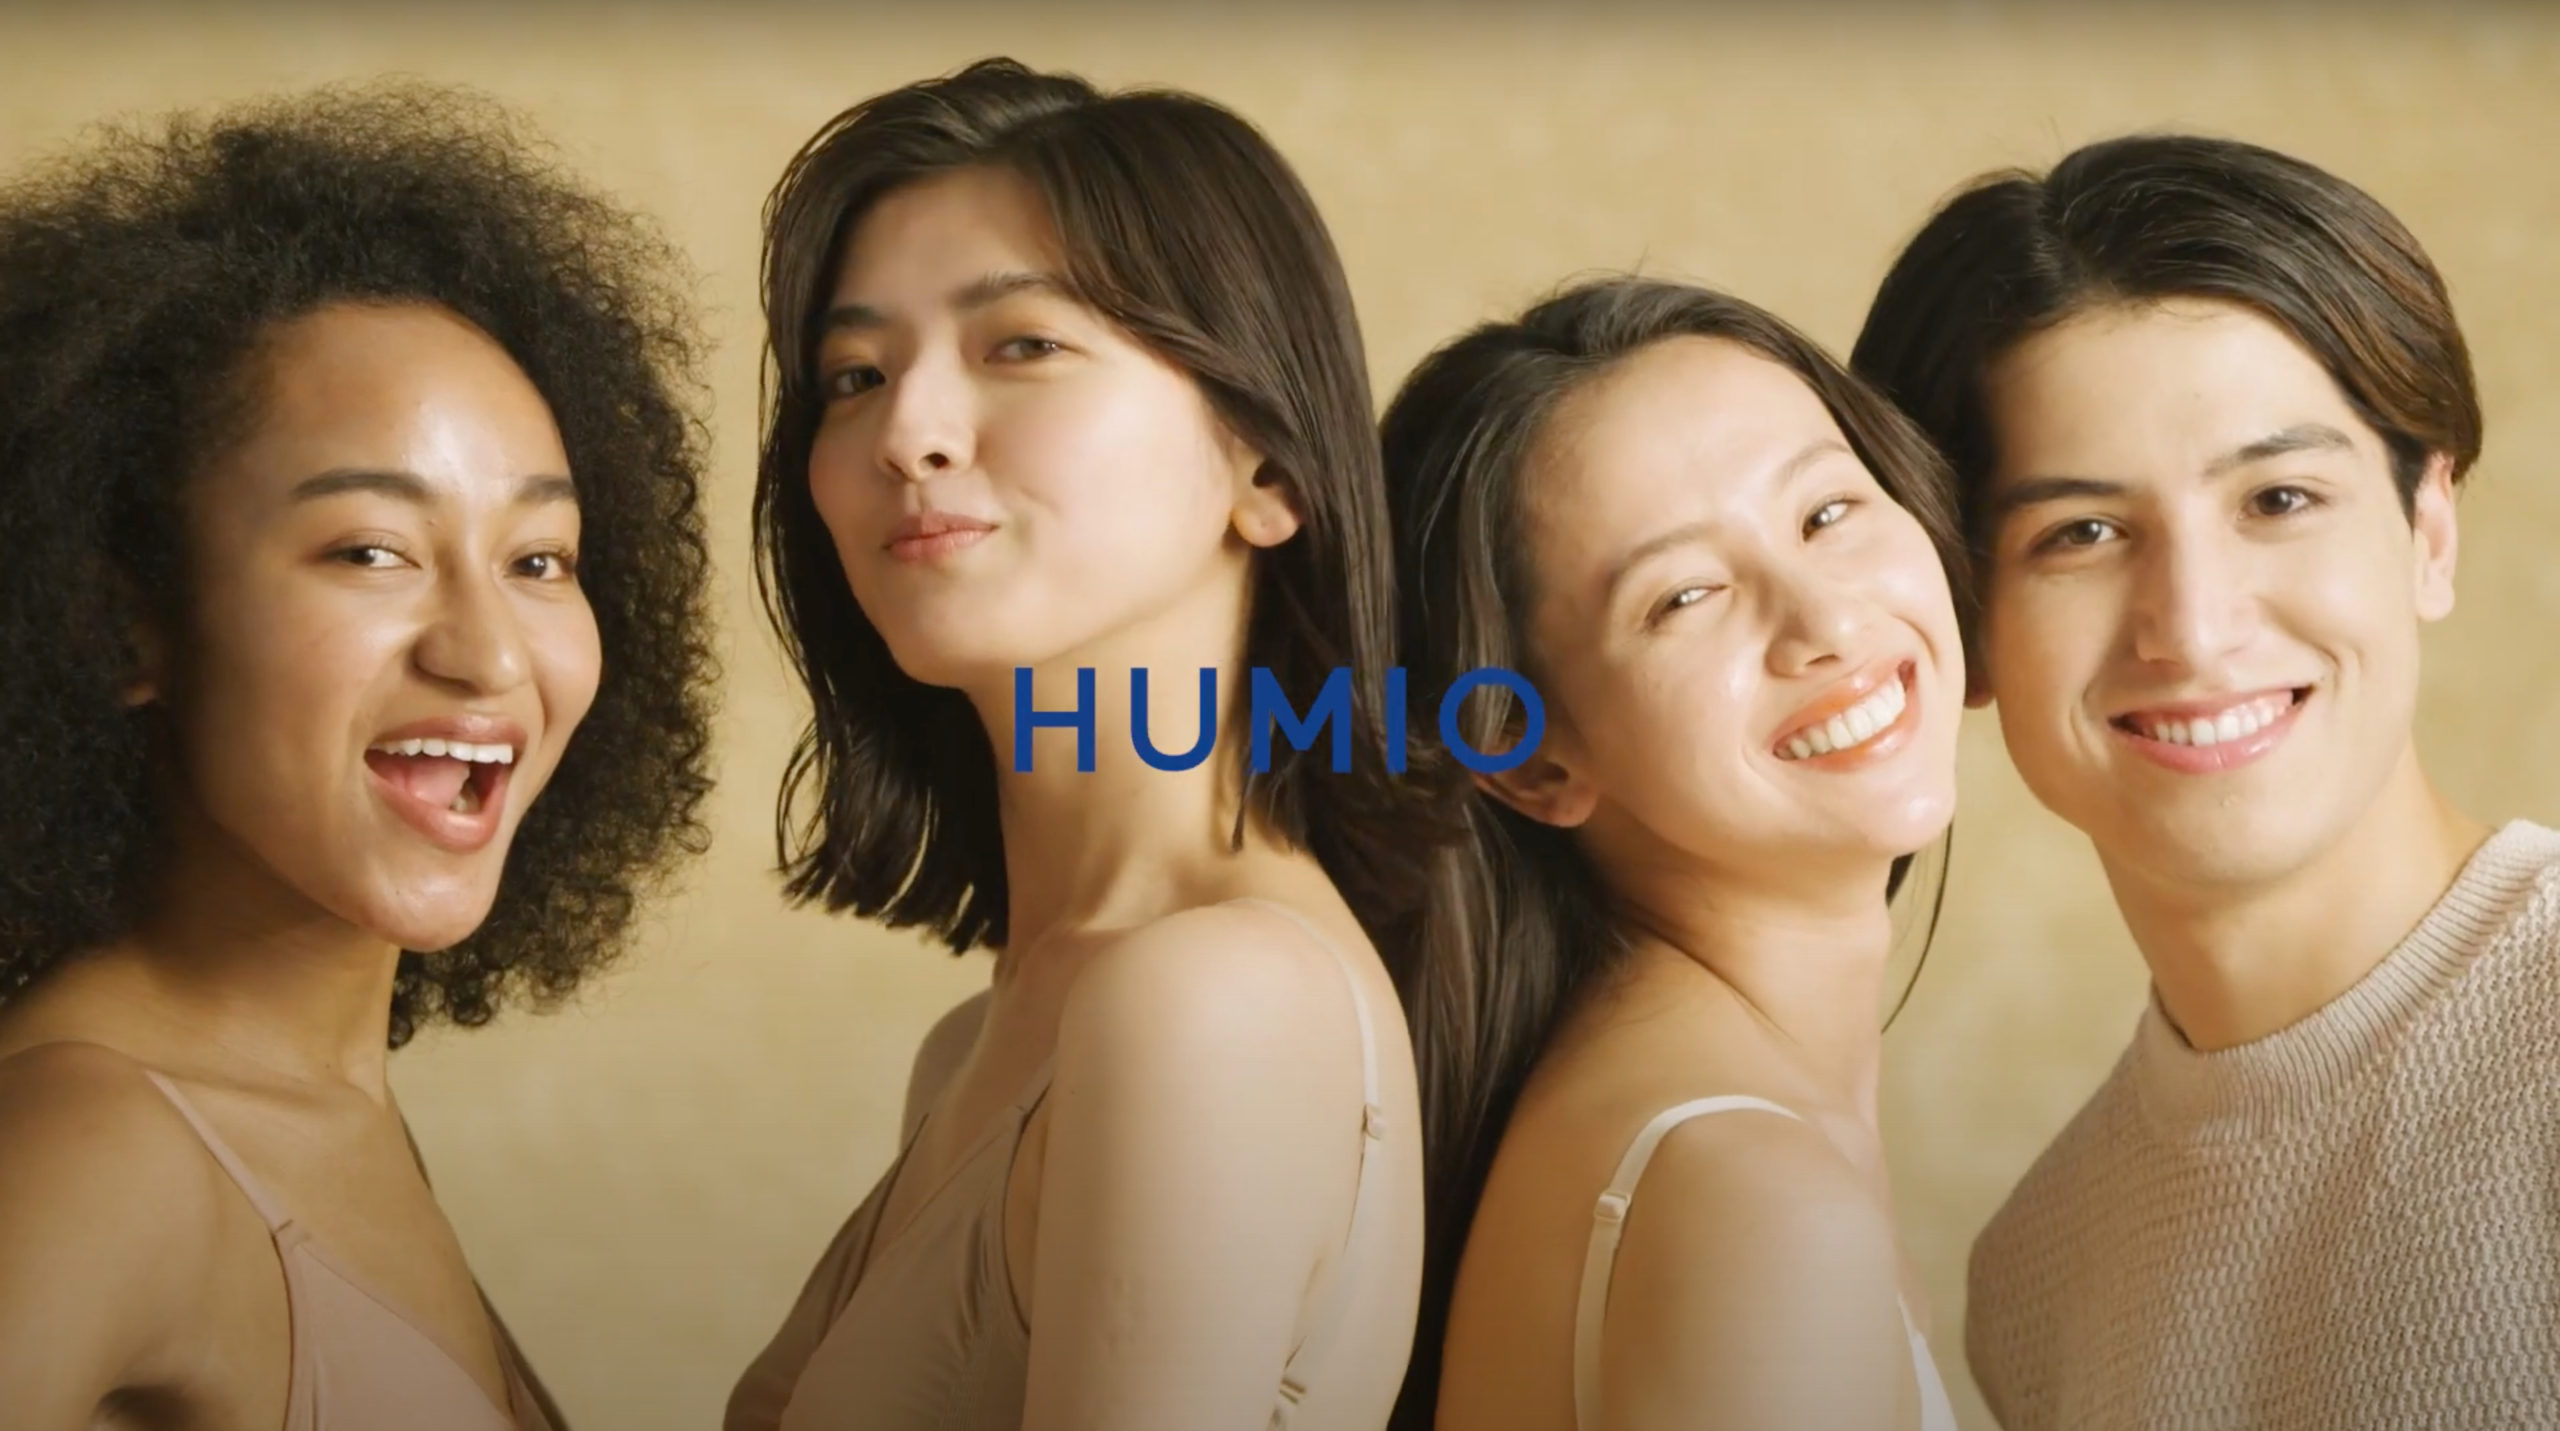 kemioプロデュースのSOSコスメブランド「HUMIO」